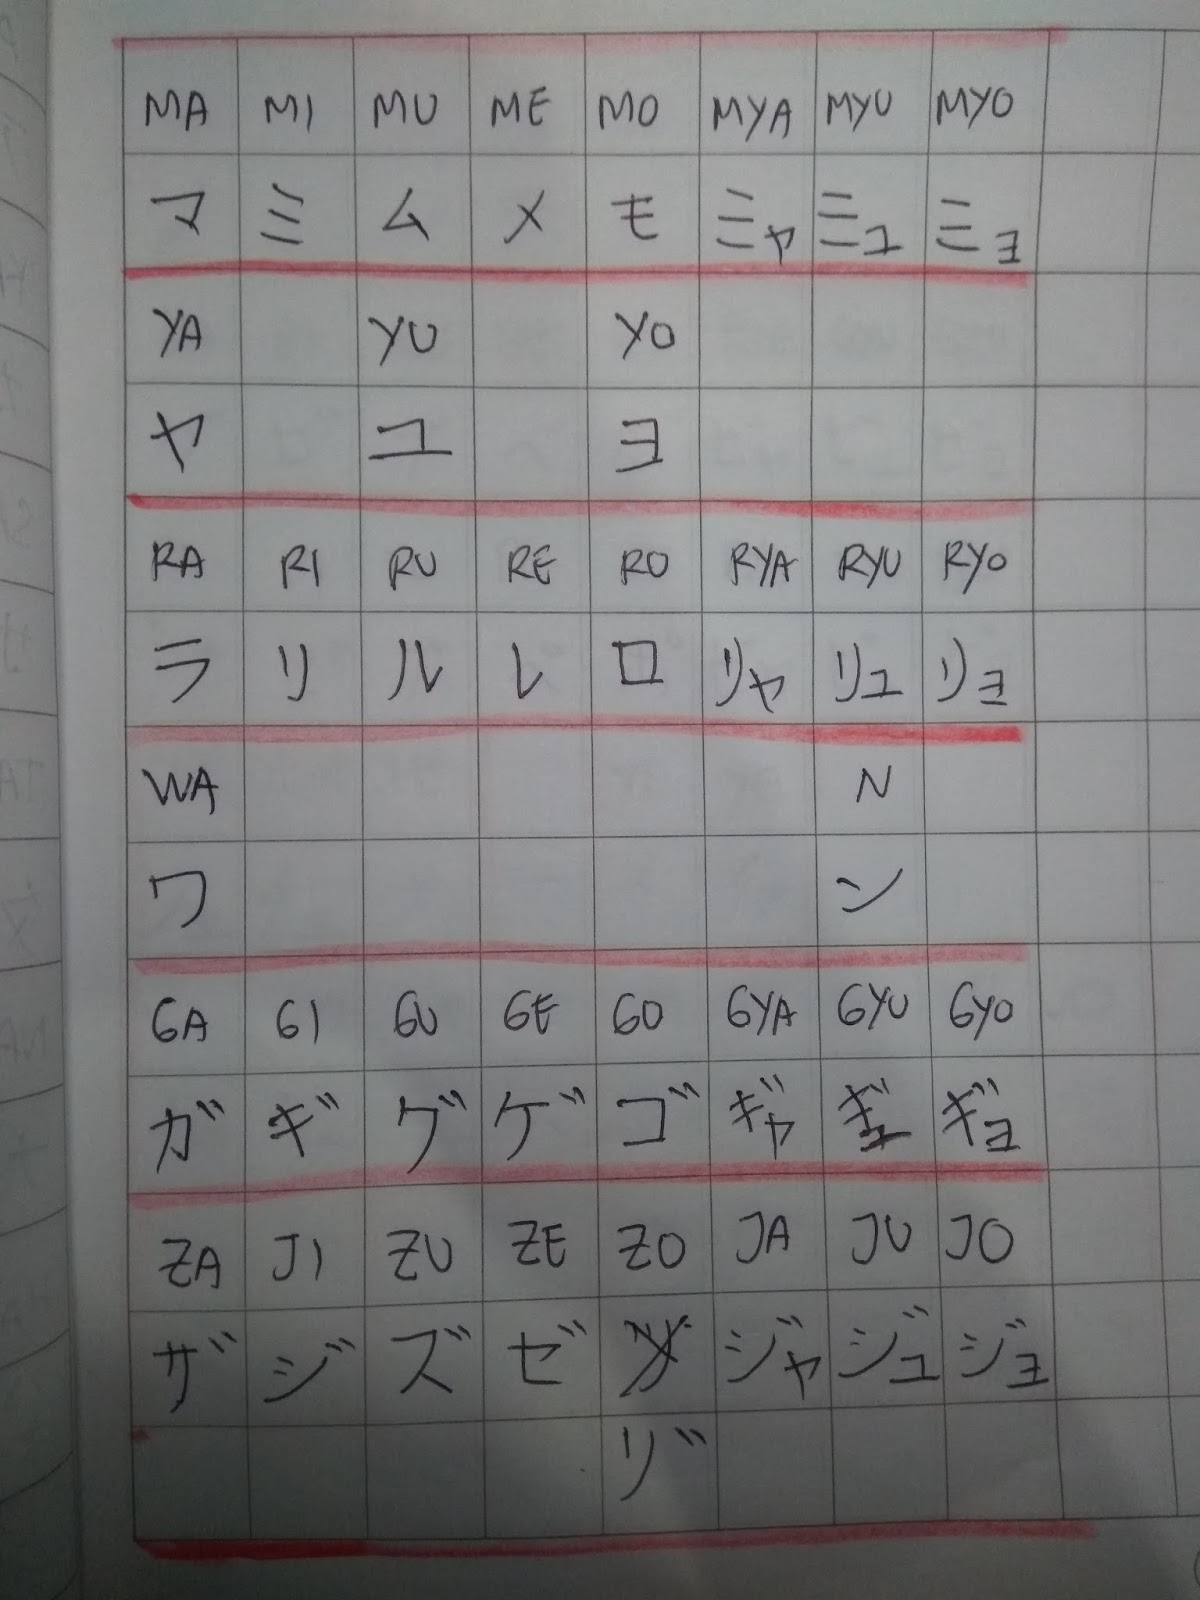 Nanti kalau kira kira sudah bisa dimulai belajar kanjinya baru akan dikupas satu per satu huruf Kanjinya